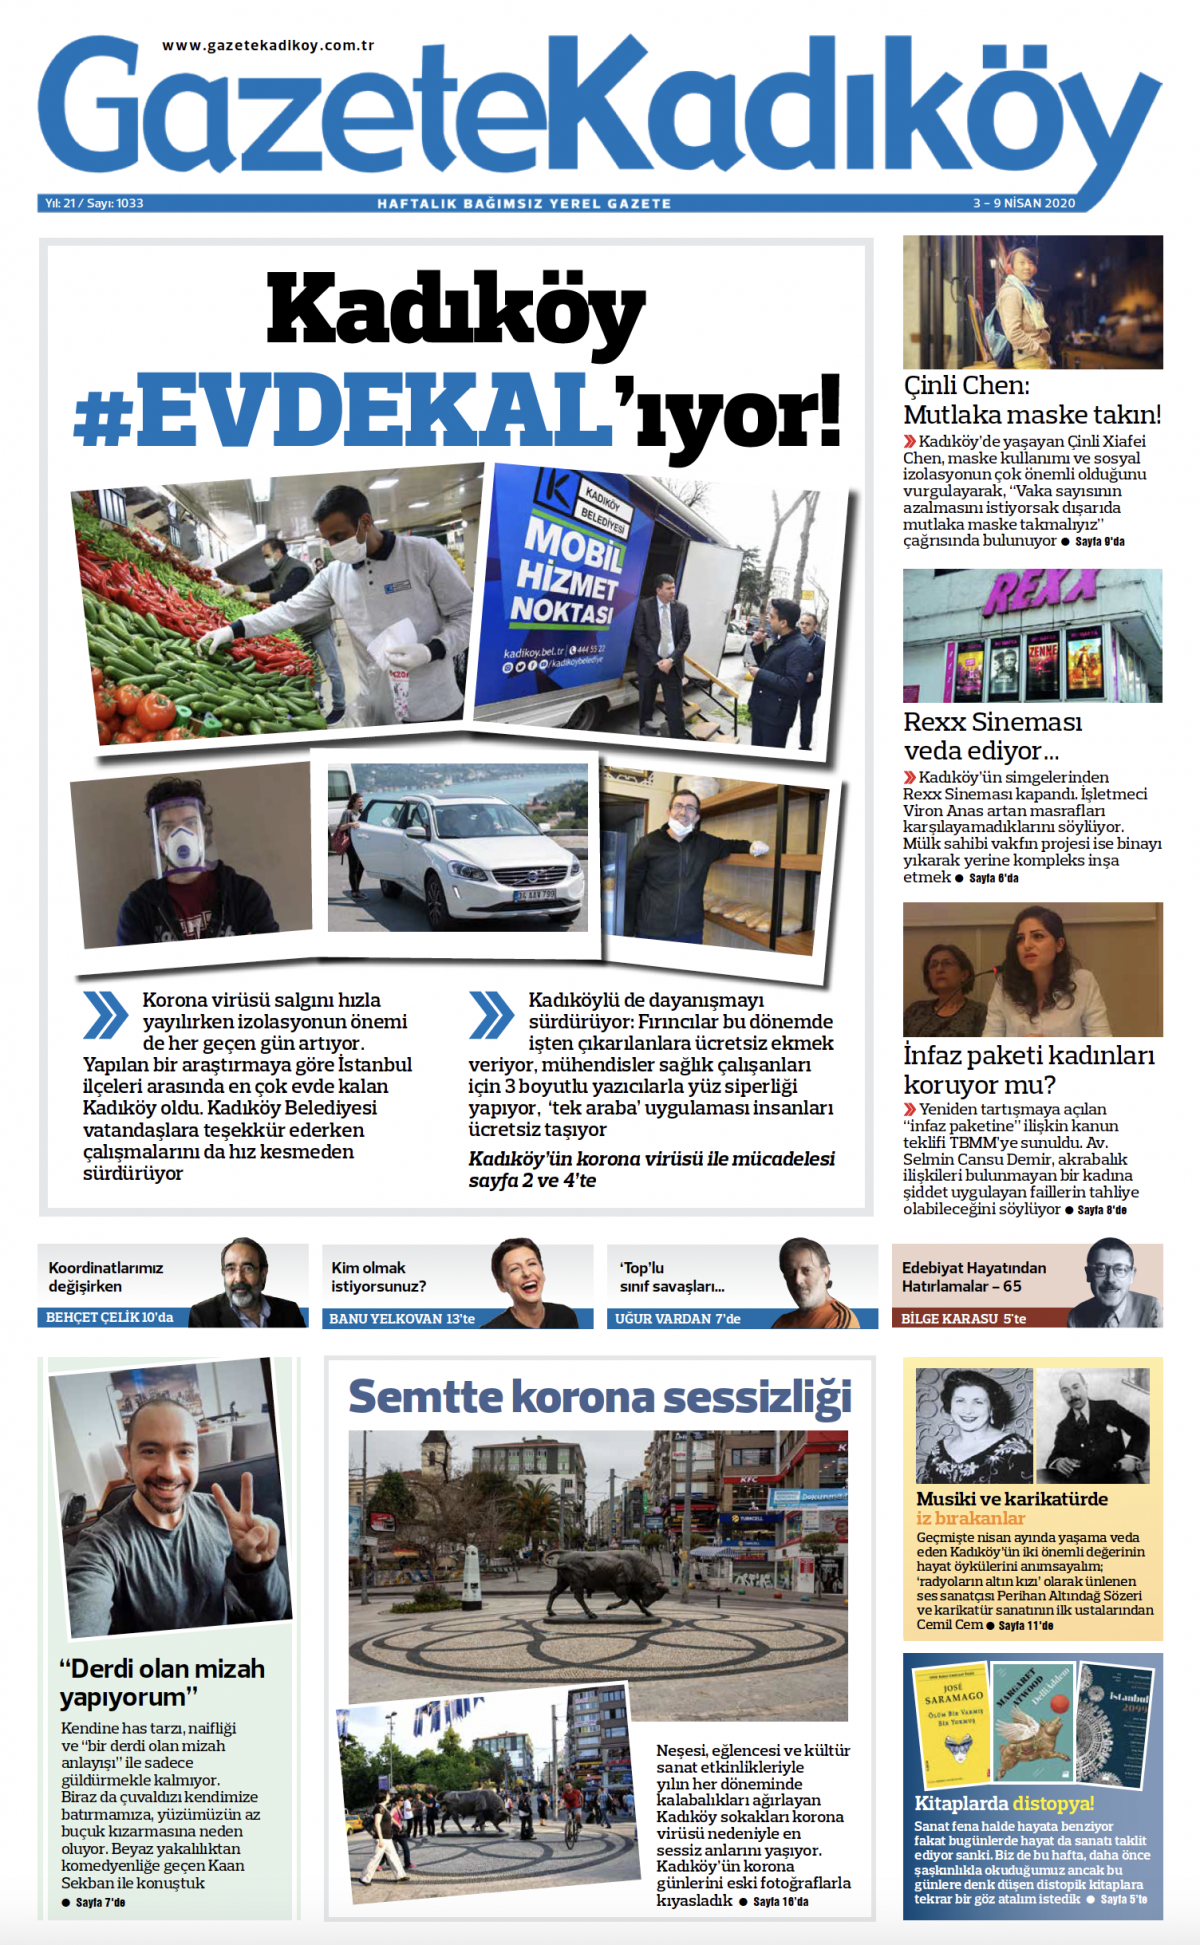 Gazete Kadıköy - 1033. Sayı